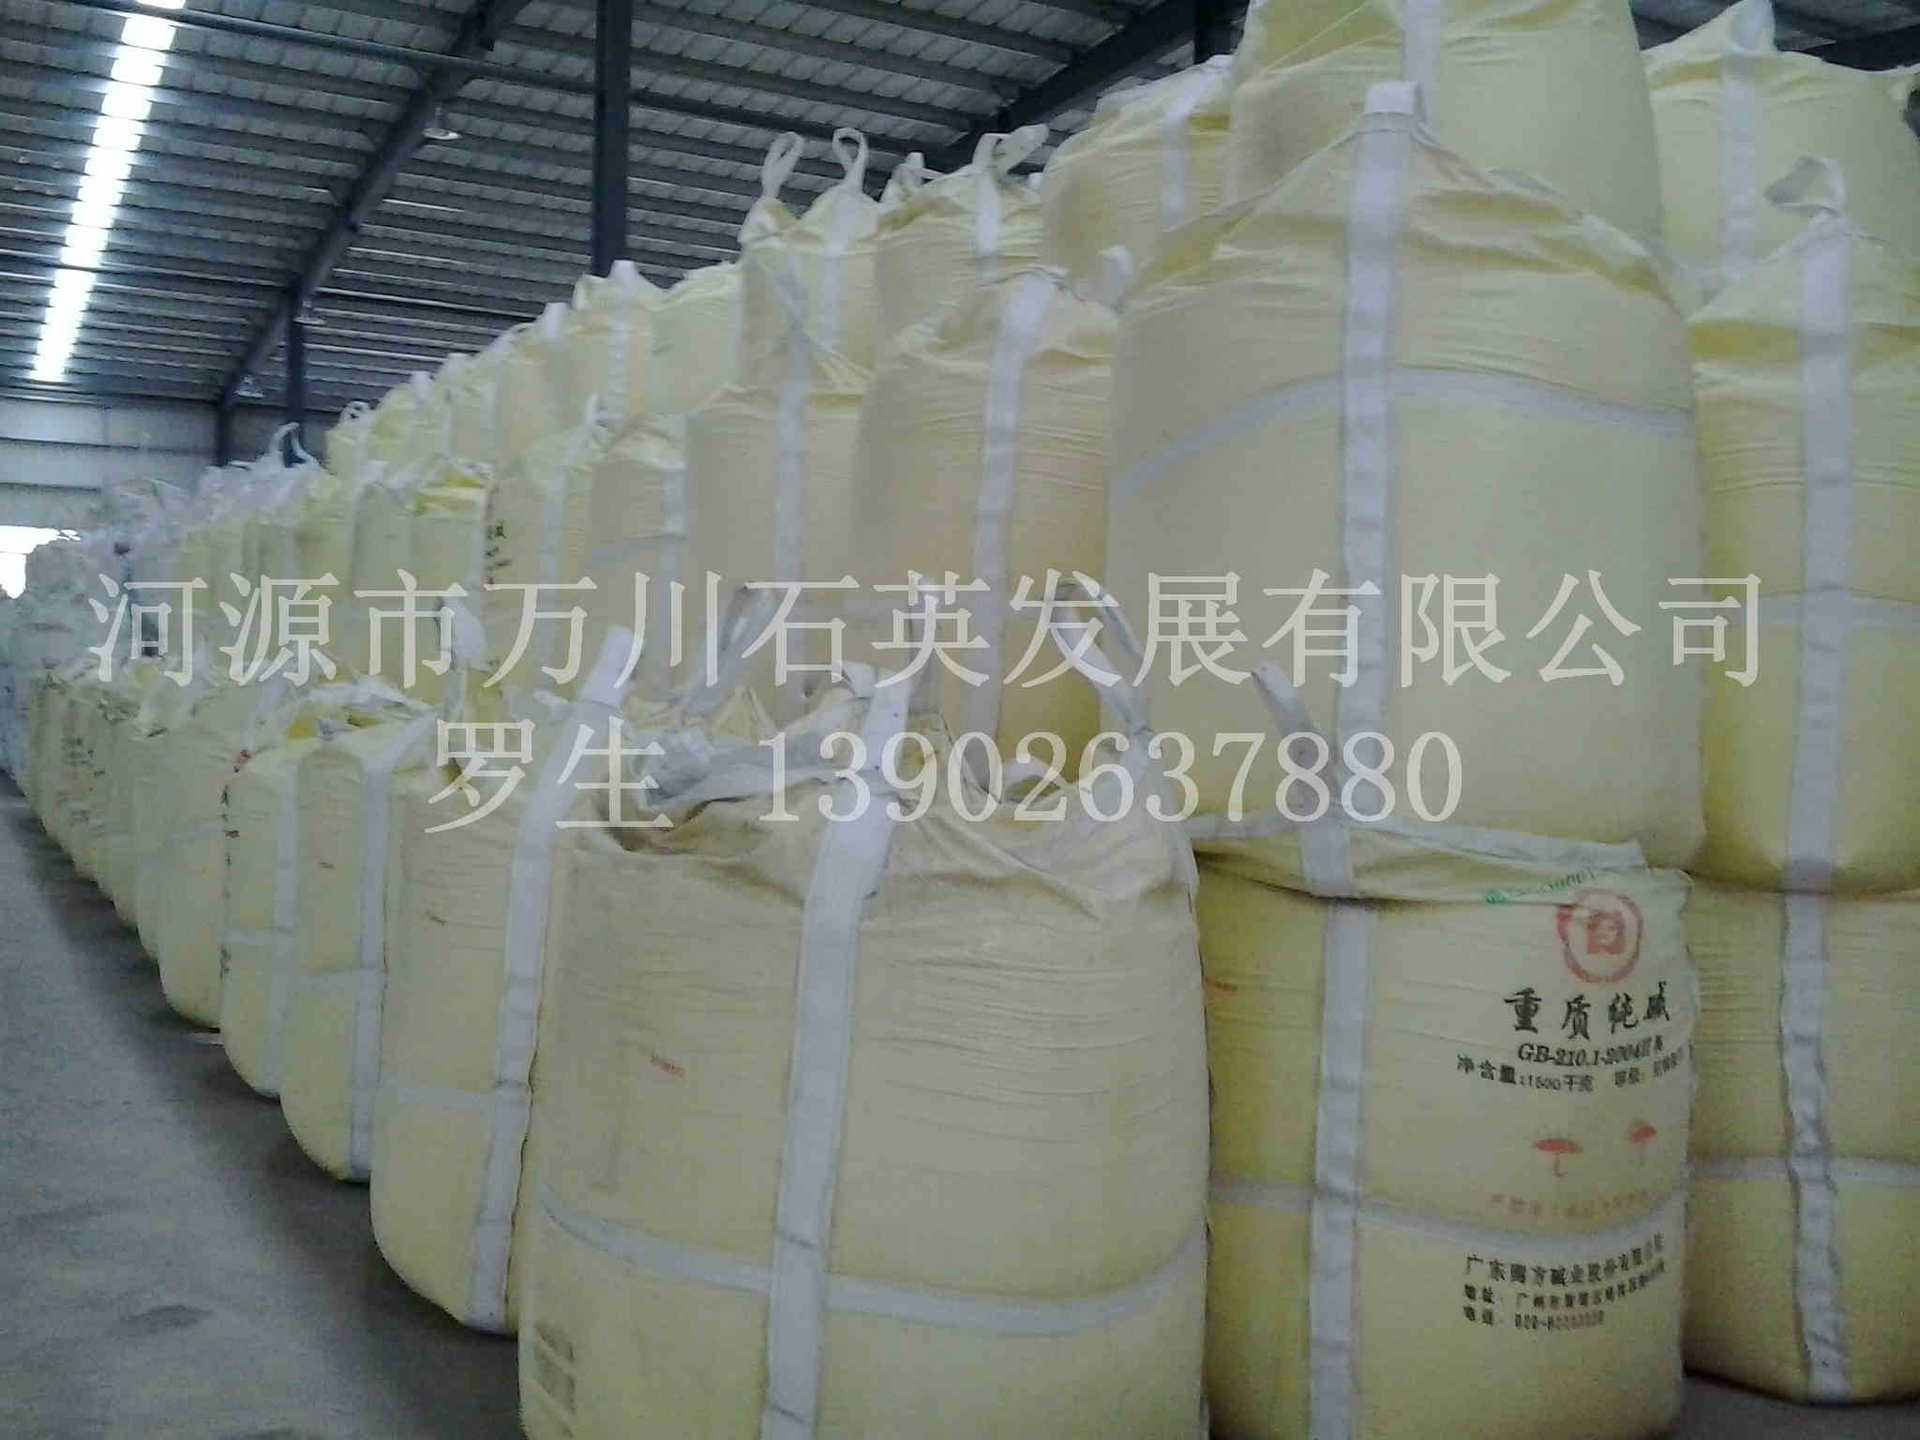 广东低铁超白石英砂含铁量低于0.008%纯物理选矿非化学酸洗浮选